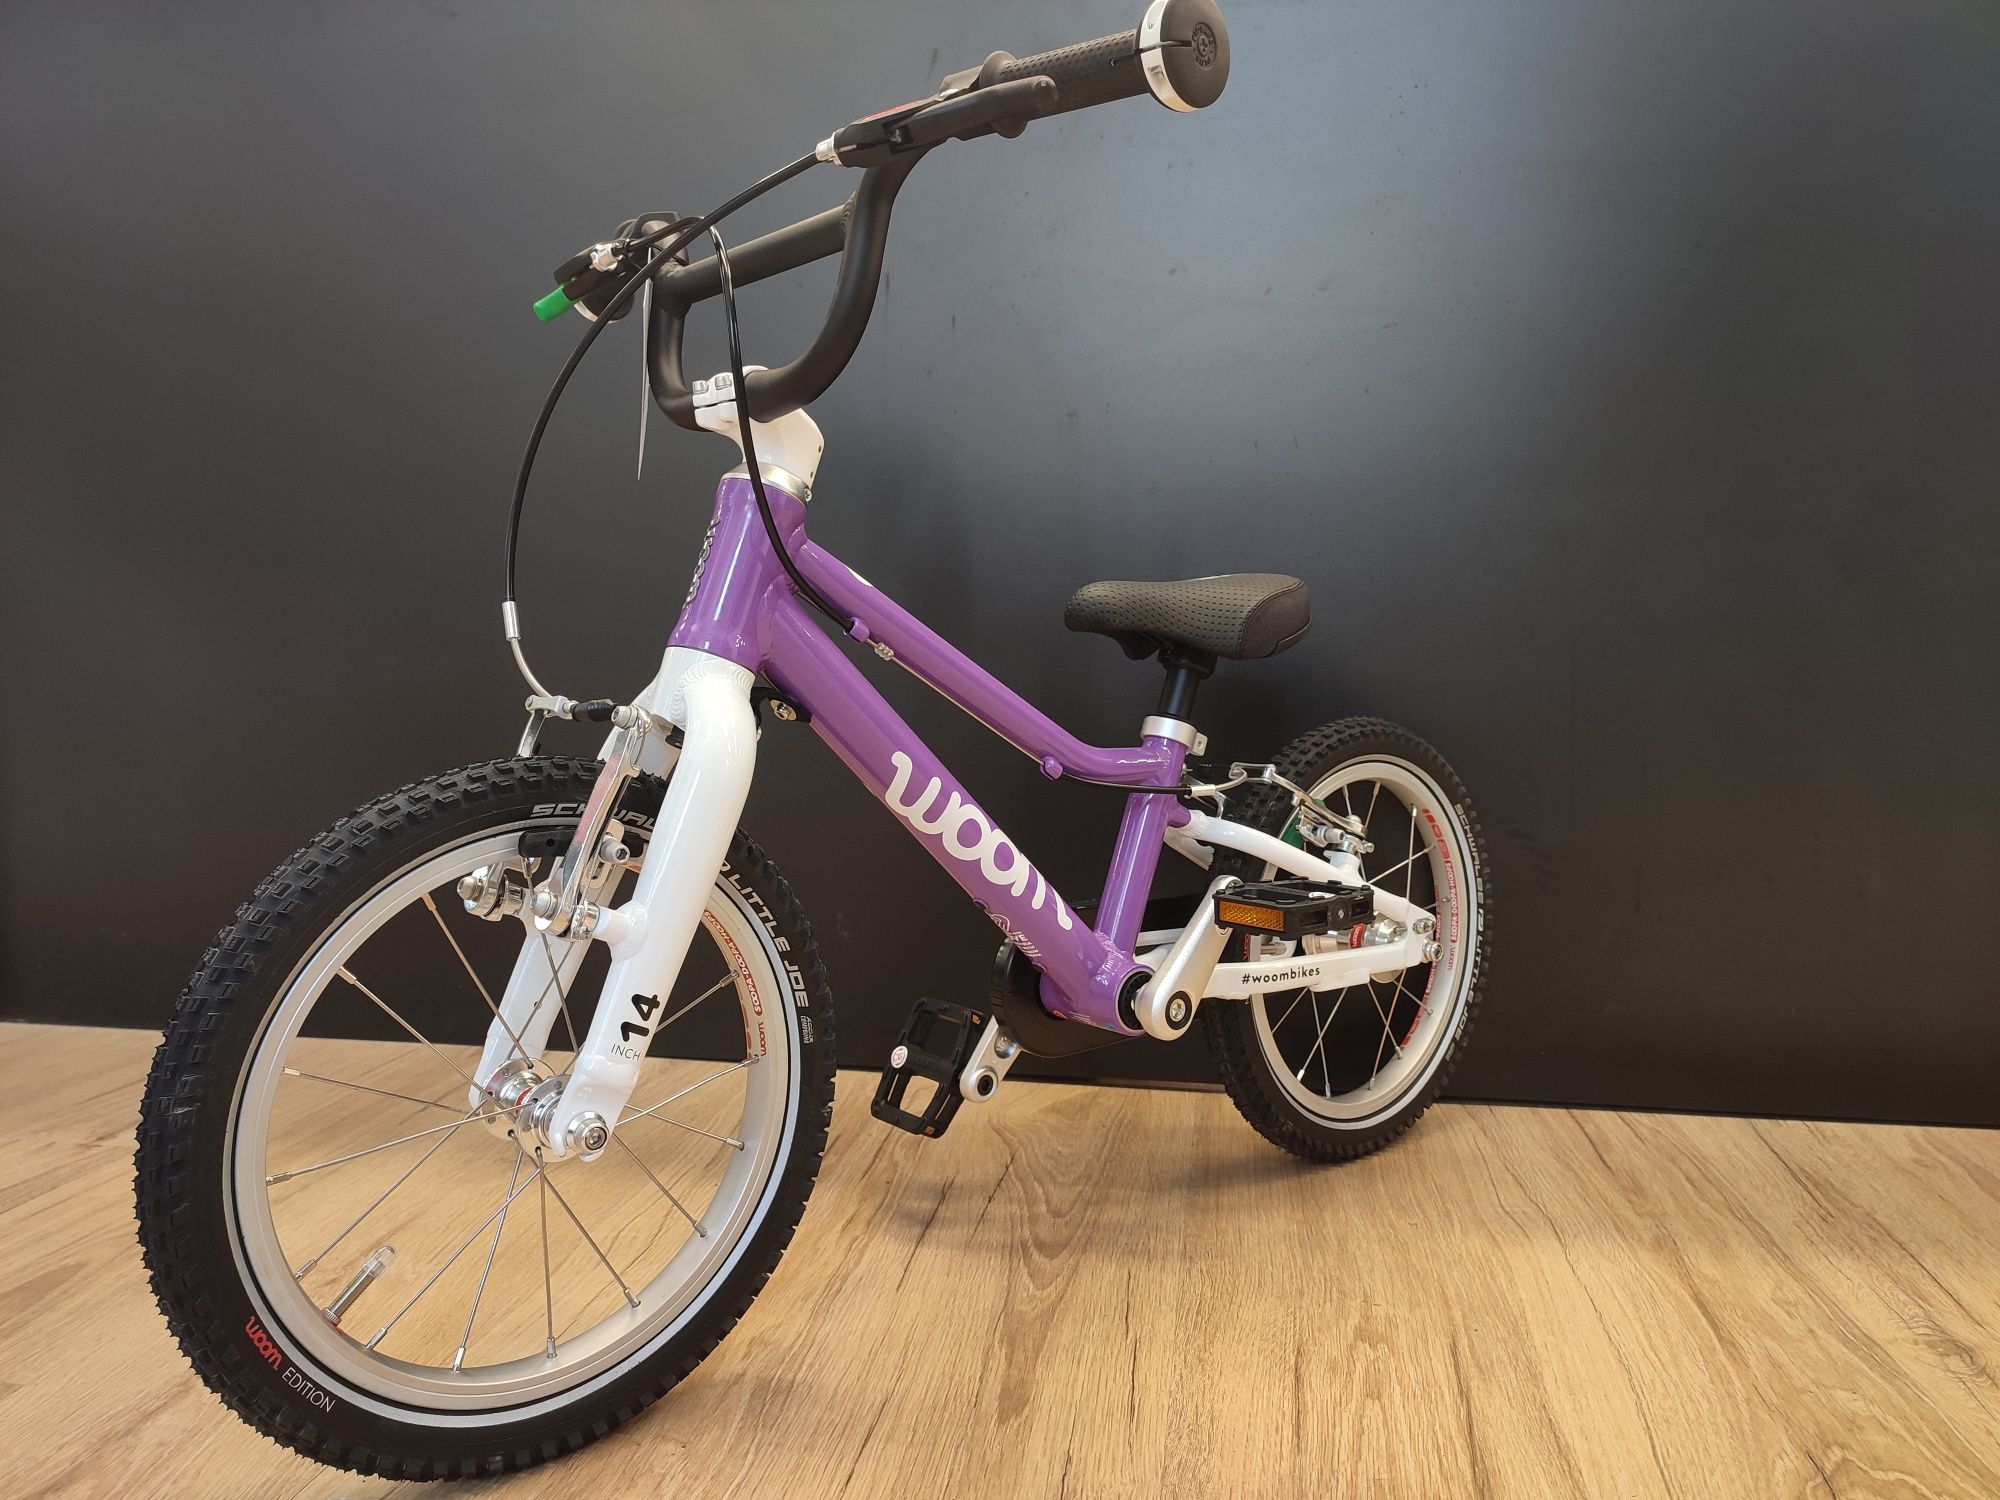 Nowy rower dziecięcy Woom 2 purple,fioletowy,Poznań,gwarancja,Fv